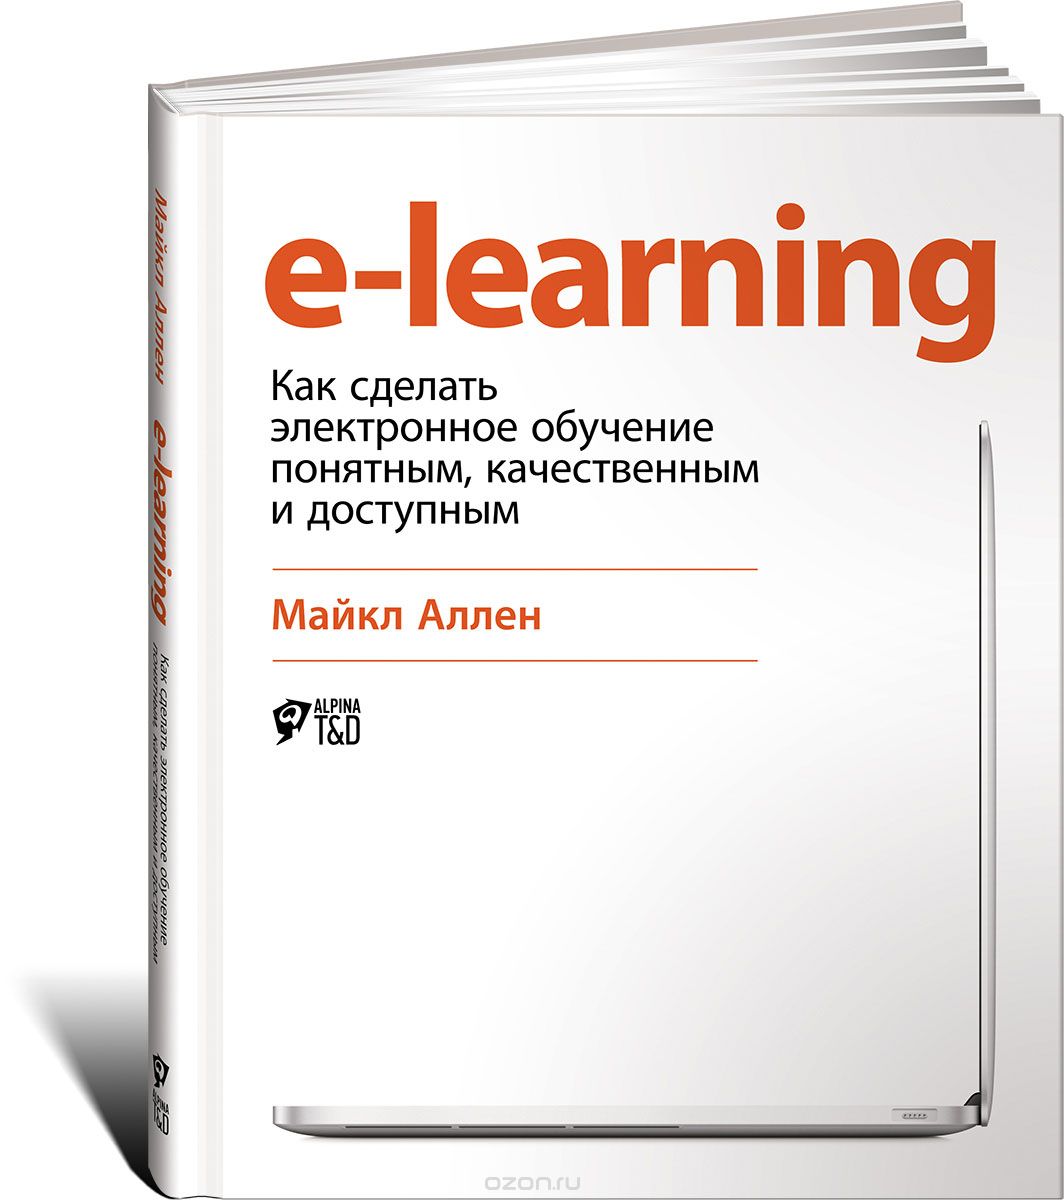 Скачать книгу "E-Learning: Как сделать электронное обучение понятным, качественным и доступным, Майкл Аллен"